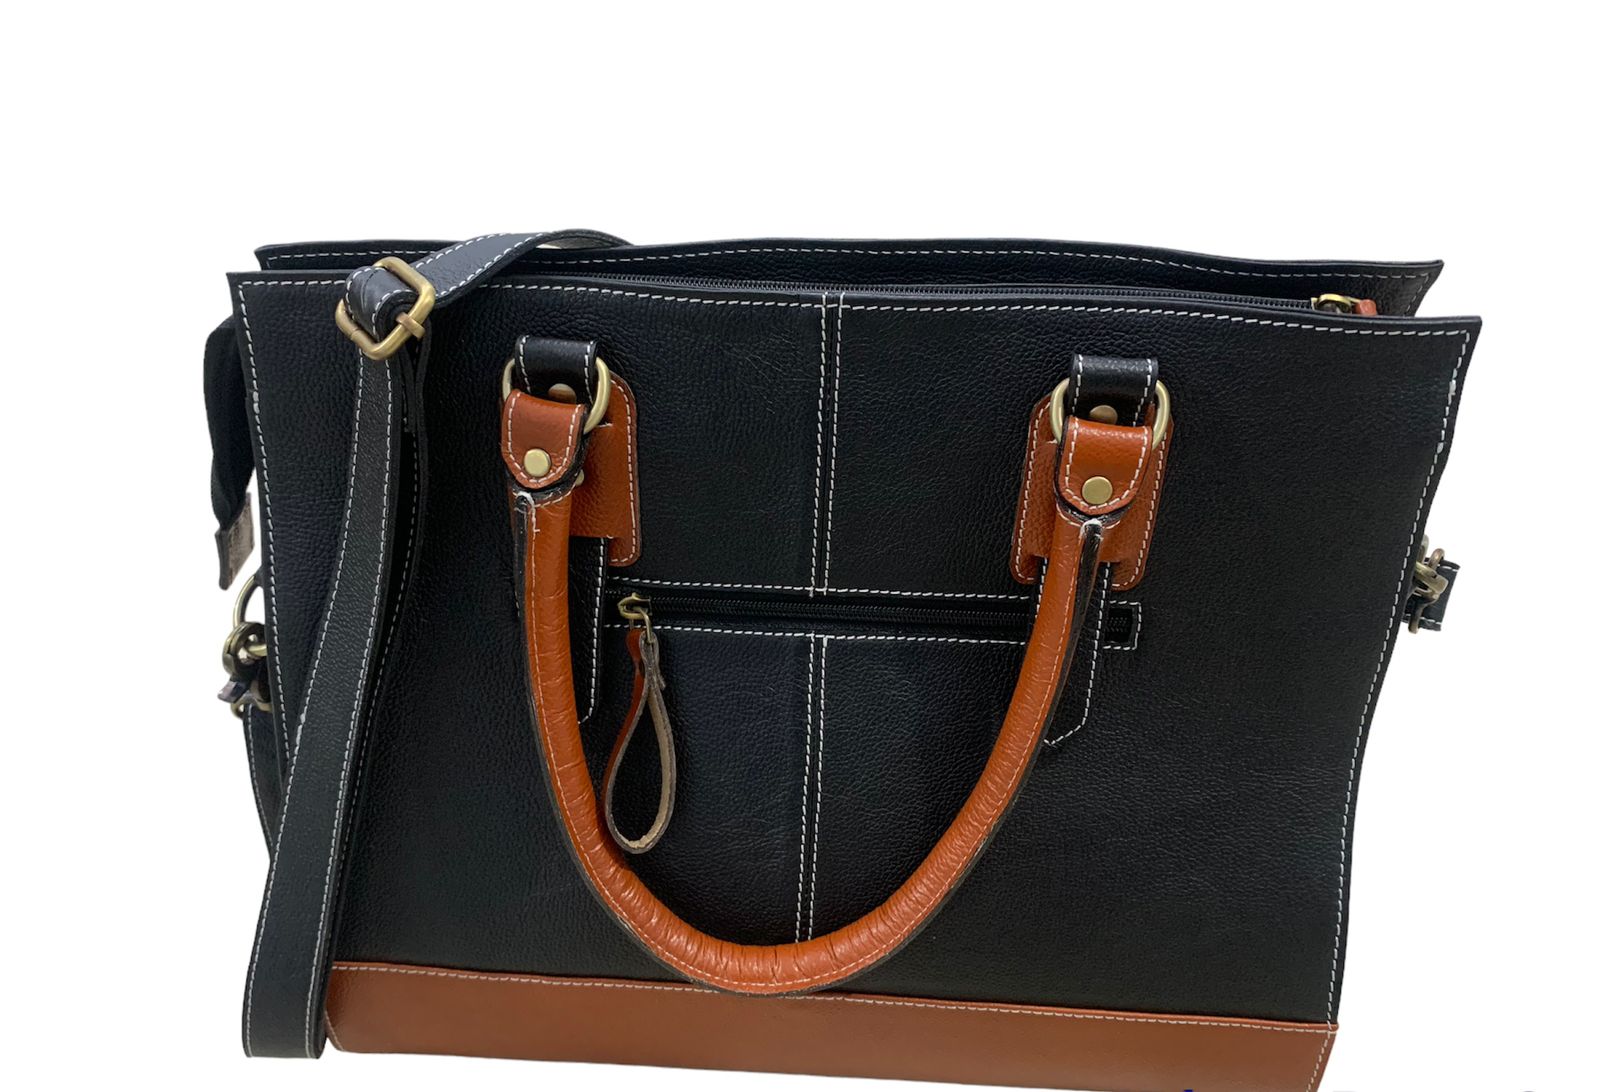 Leather handbag for Women